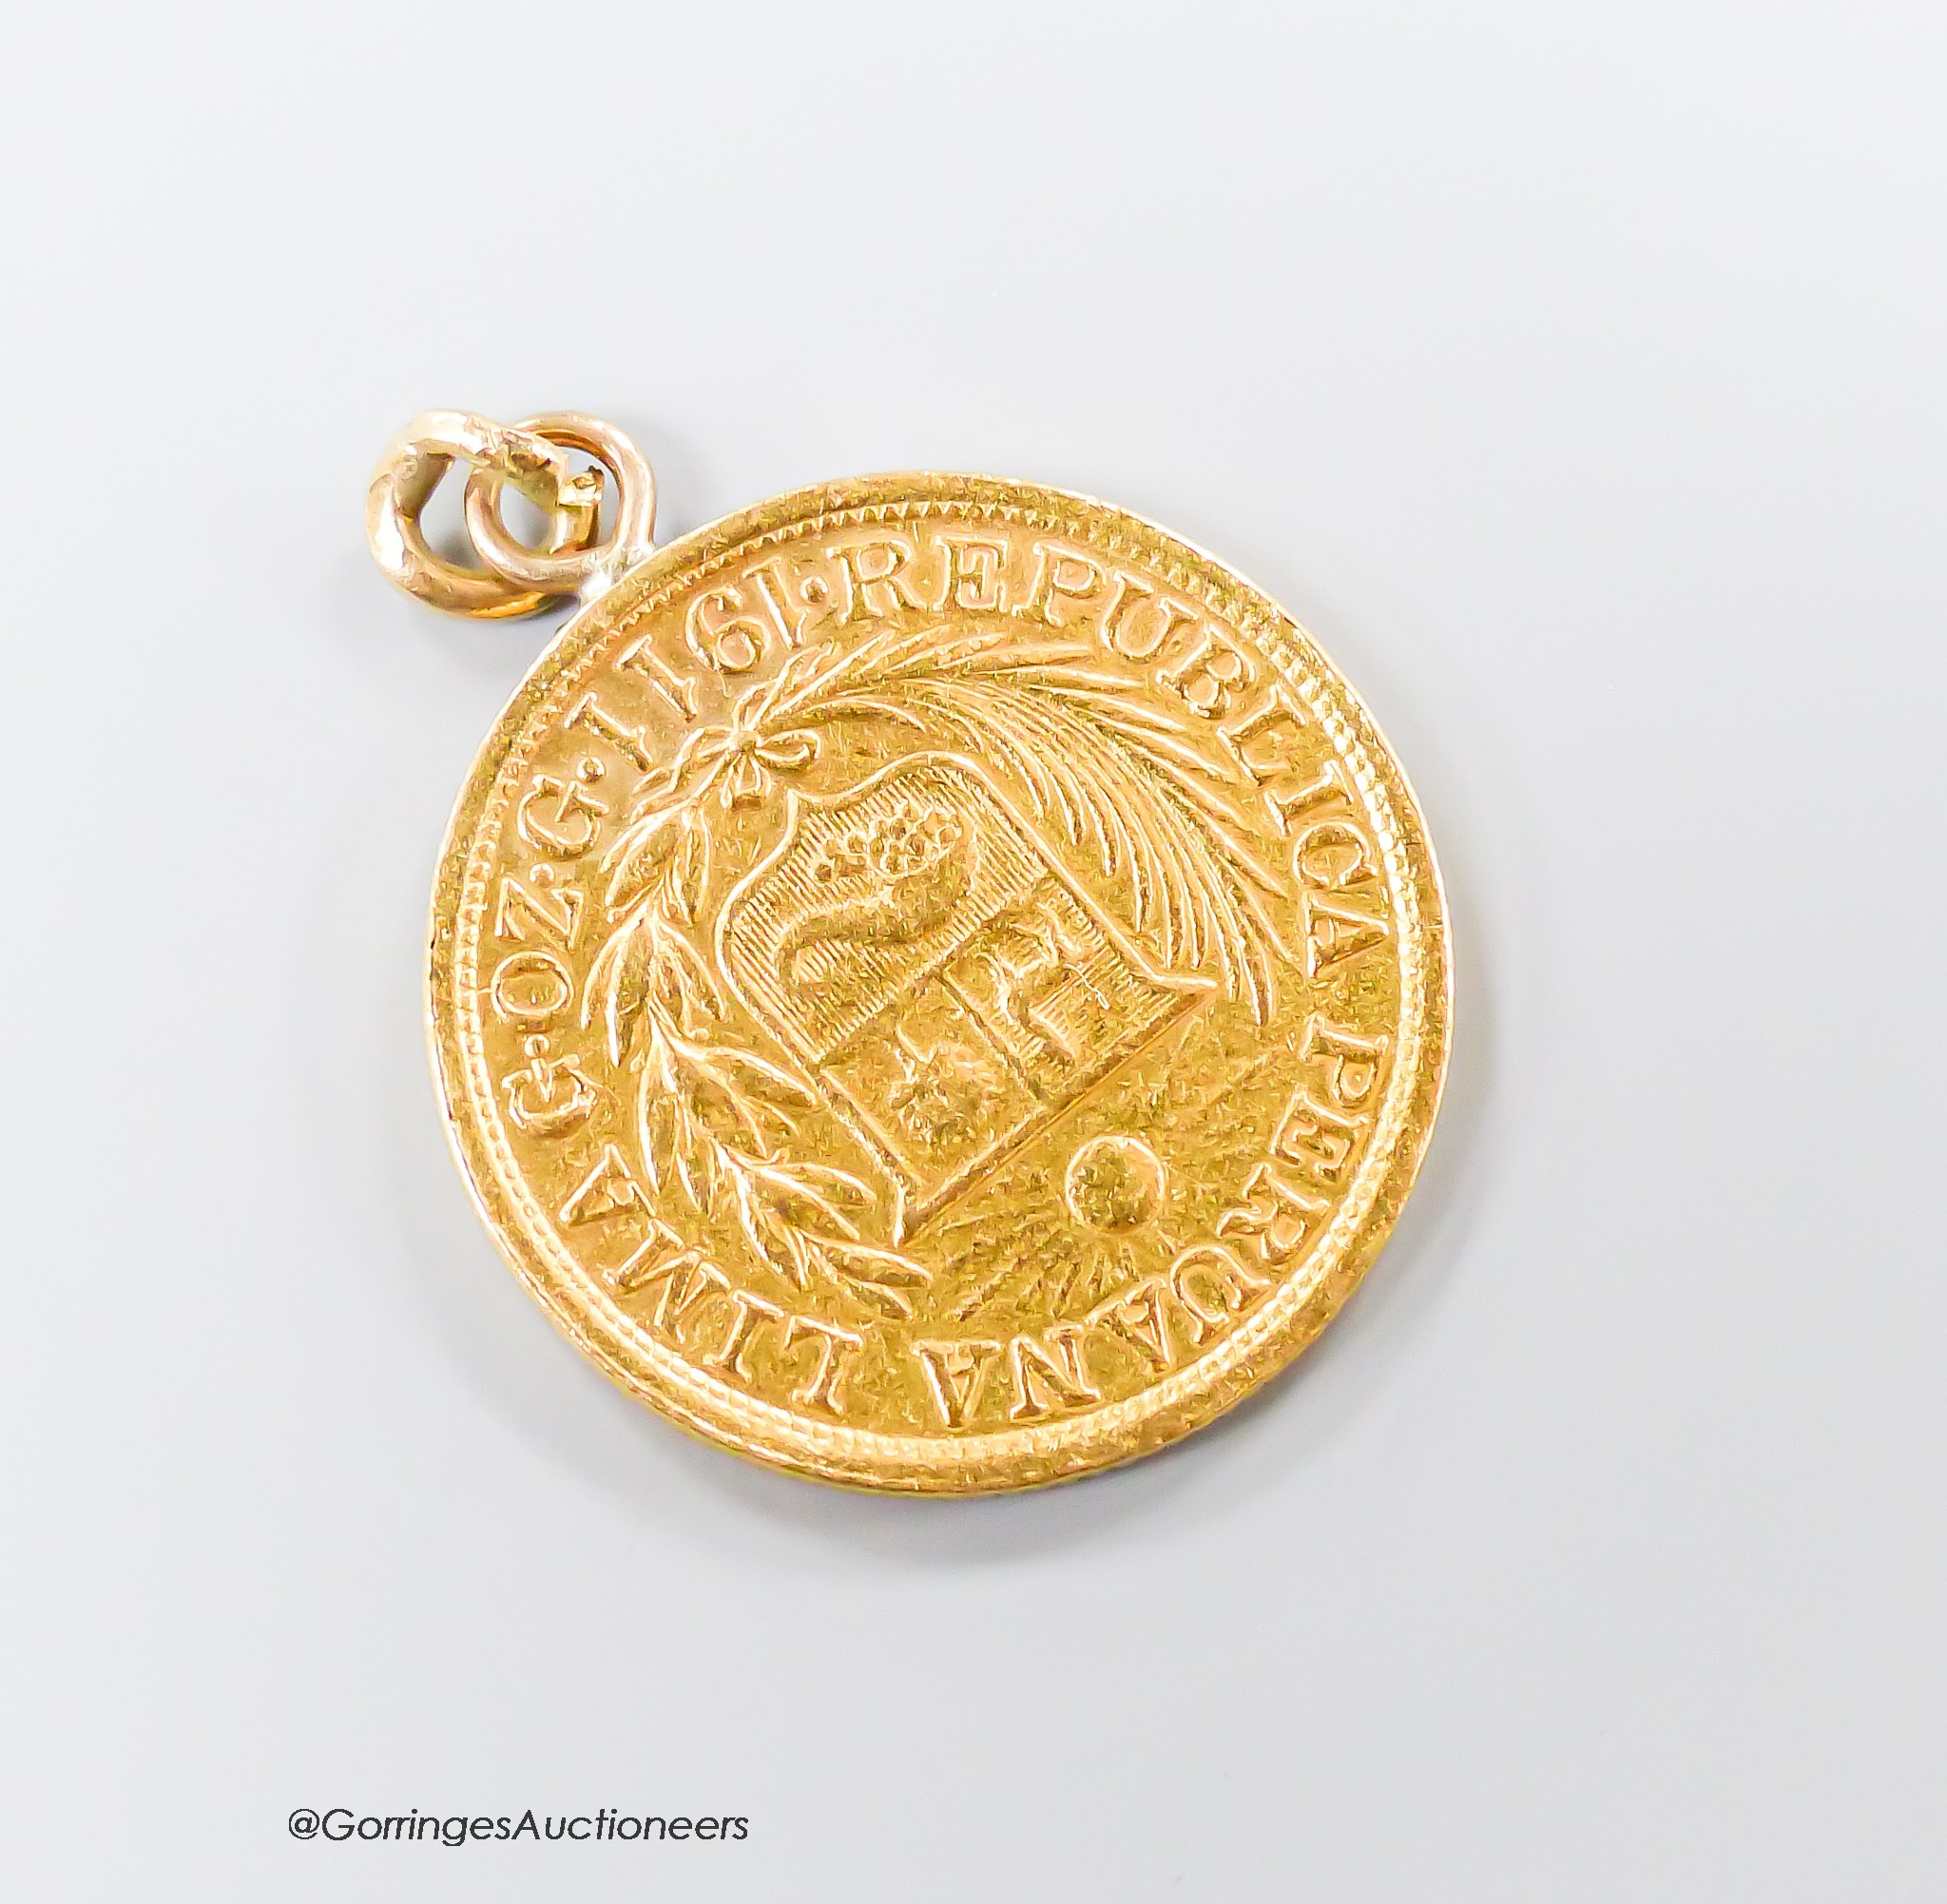 A 1911 Peruvian gold coin, now mounted as a pendant, 8.2 grams.